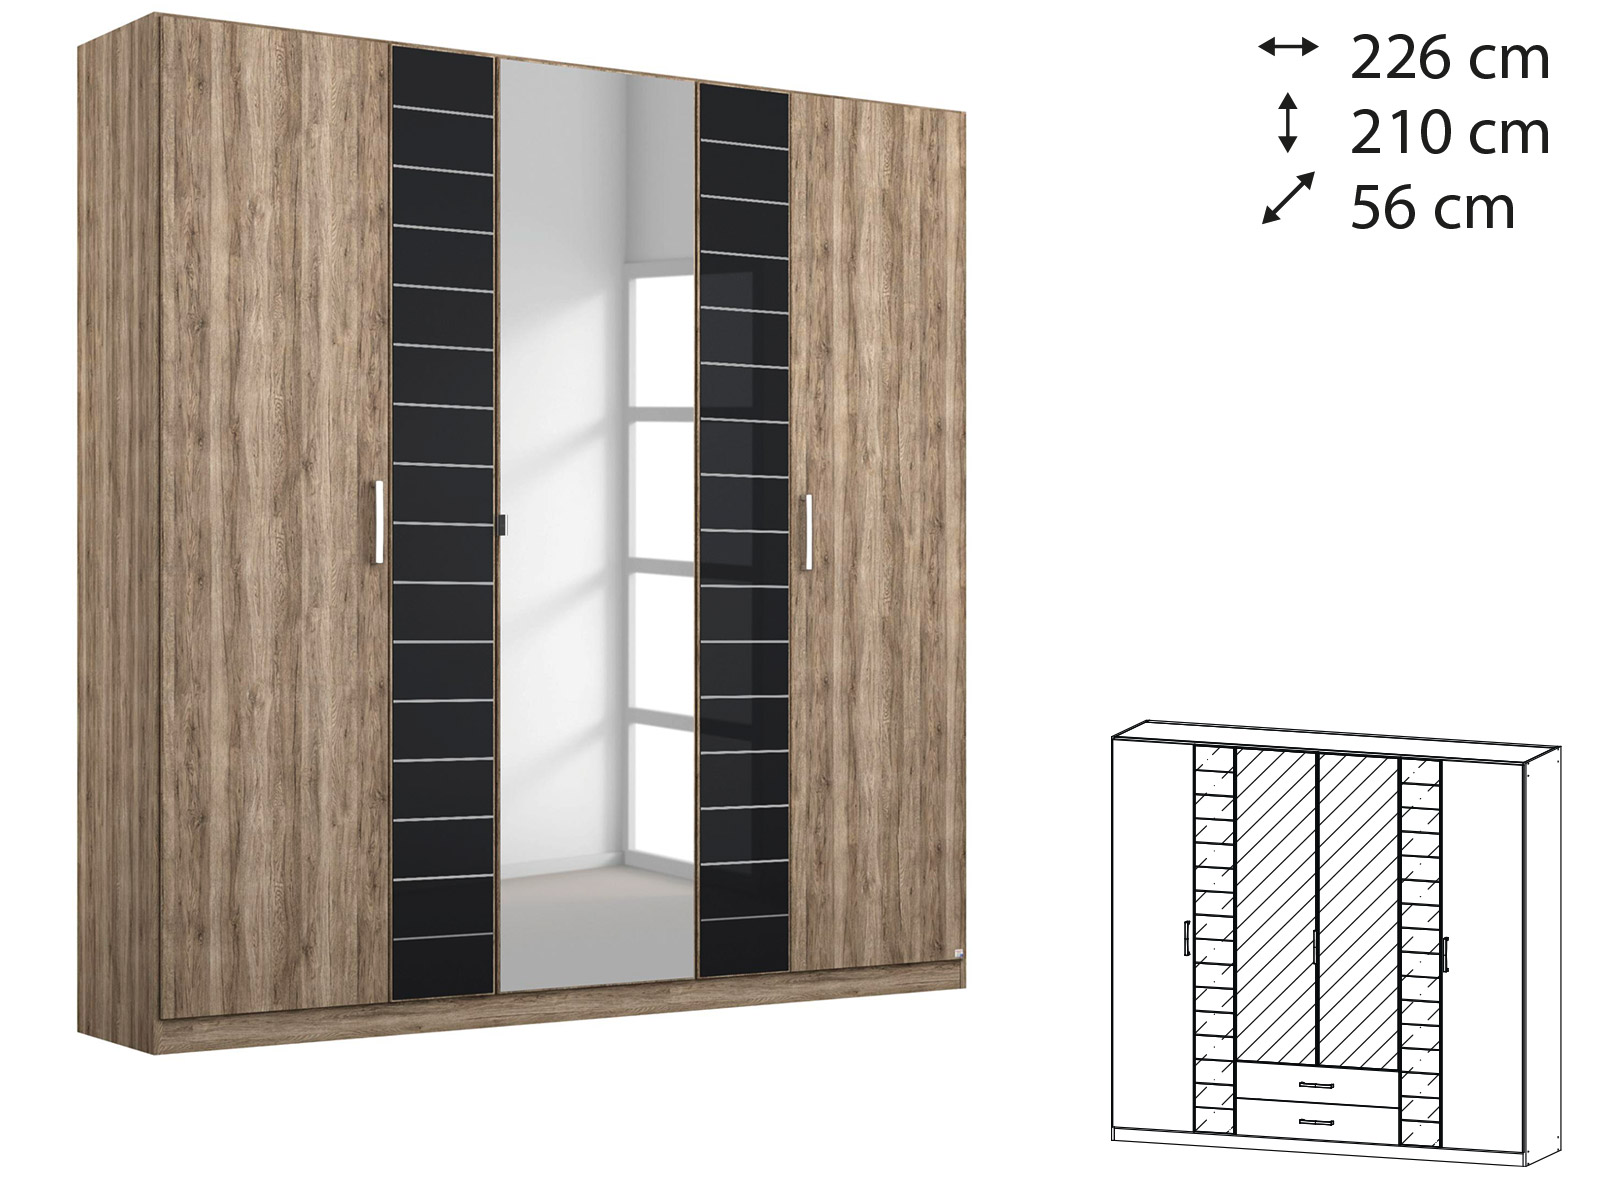 Rauch Terano Wardrobe - 6 Door, 2 Mirror Doors, 2 Glass Doors (with cornice) - ART0T5T